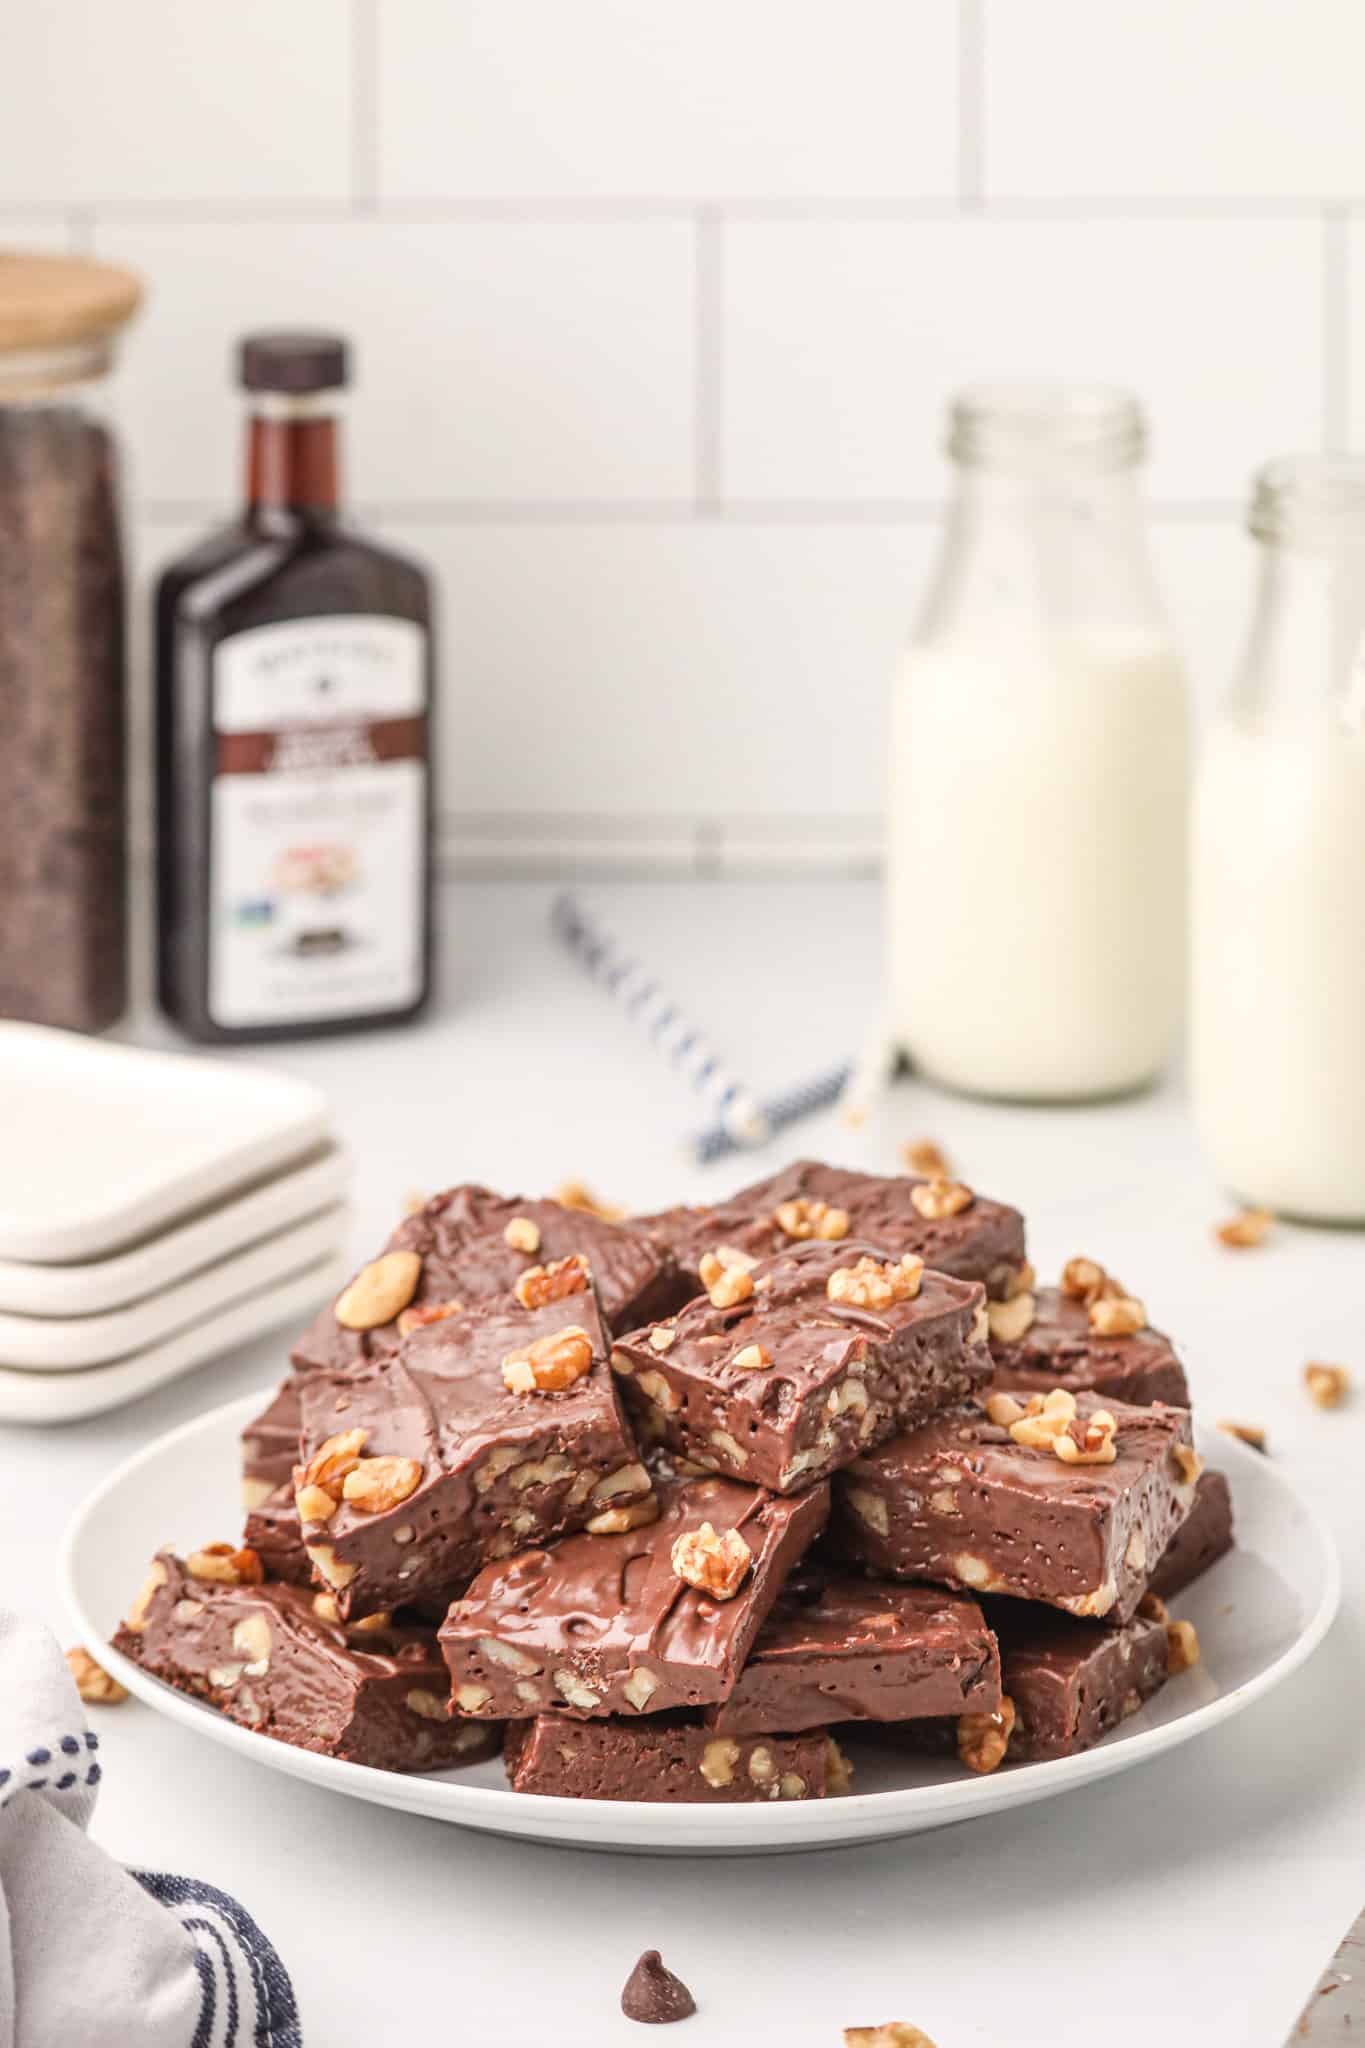 4 Ingredient Fudge is a simple and delicious condensed milk chocolate walnut fudge recipe.